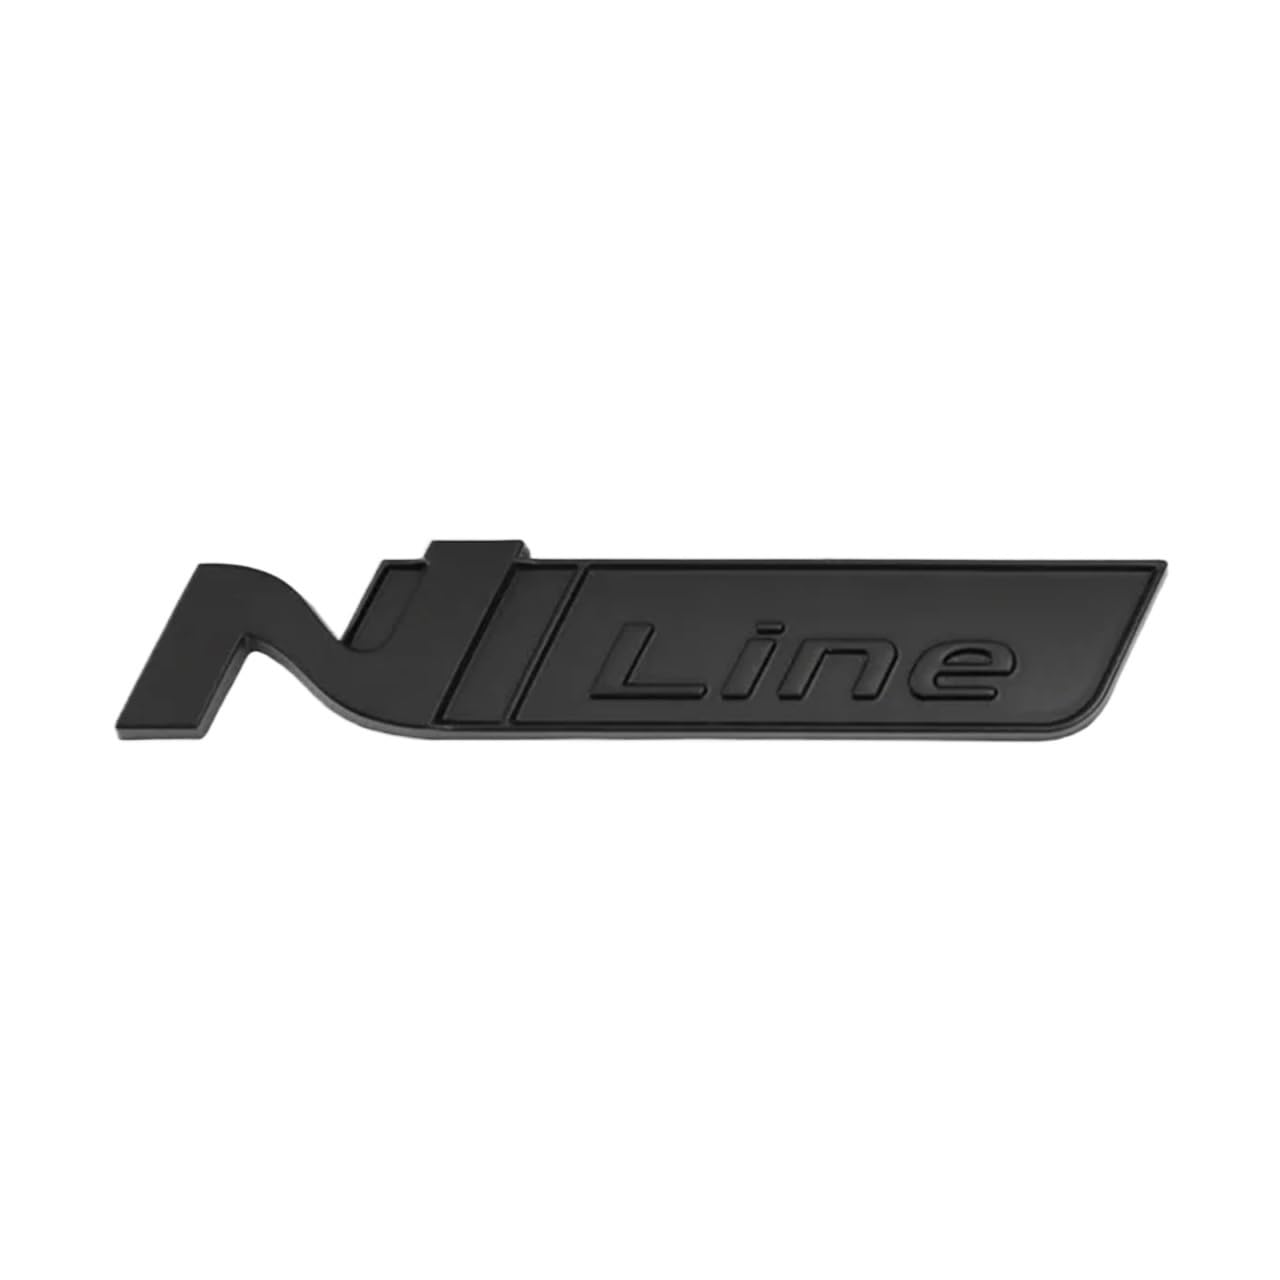 N Line Nline Abzeichen Emblem Aufkleber Frontgrill Kompatibel mit Sonata I30 2021 Elantra Veloster Kona Tucson N Line StylingCar Aufkleber(PURPLE) von NRUOS